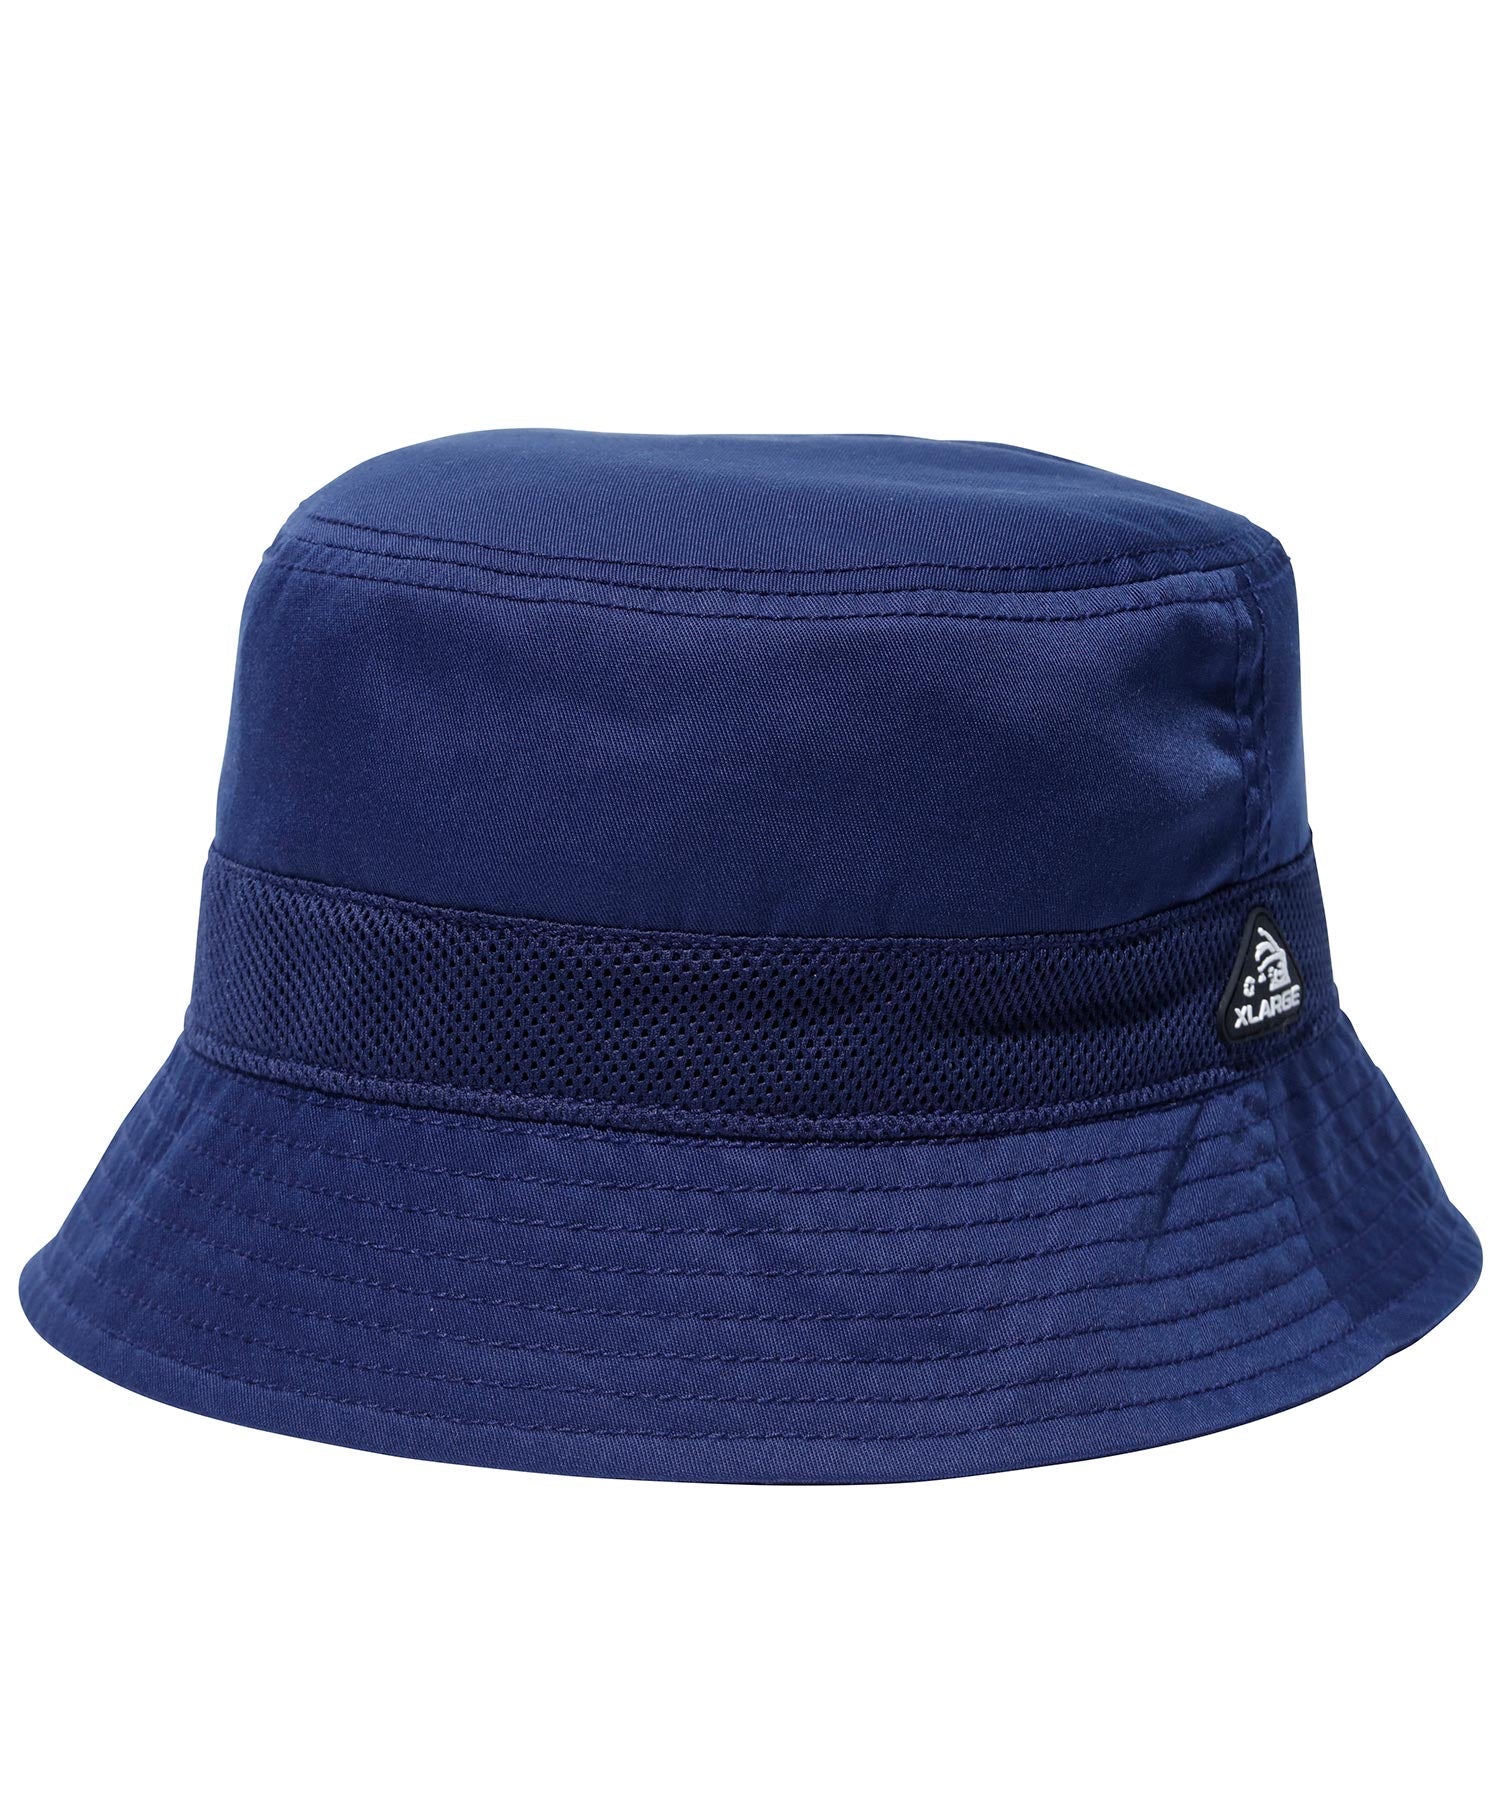 หมวกบักเก็ต XLARGE รุ่น Mesh Panel Bucket Hat